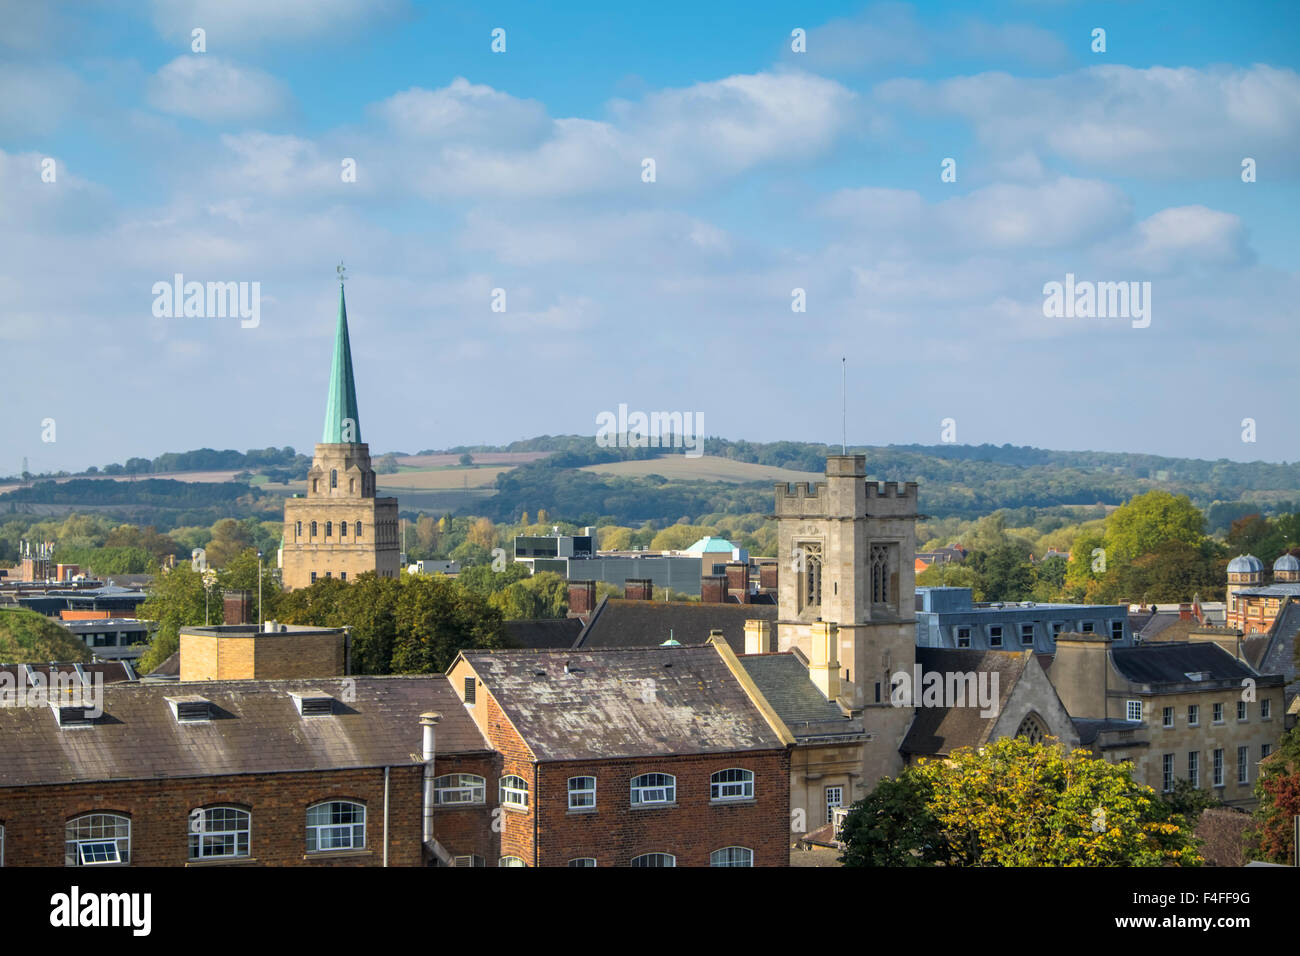 Una visita alla storica città universitaria di Oxford Oxfordshire England Regno Unito vista dalla torre Carfax circa a Nord Ovest Foto Stock